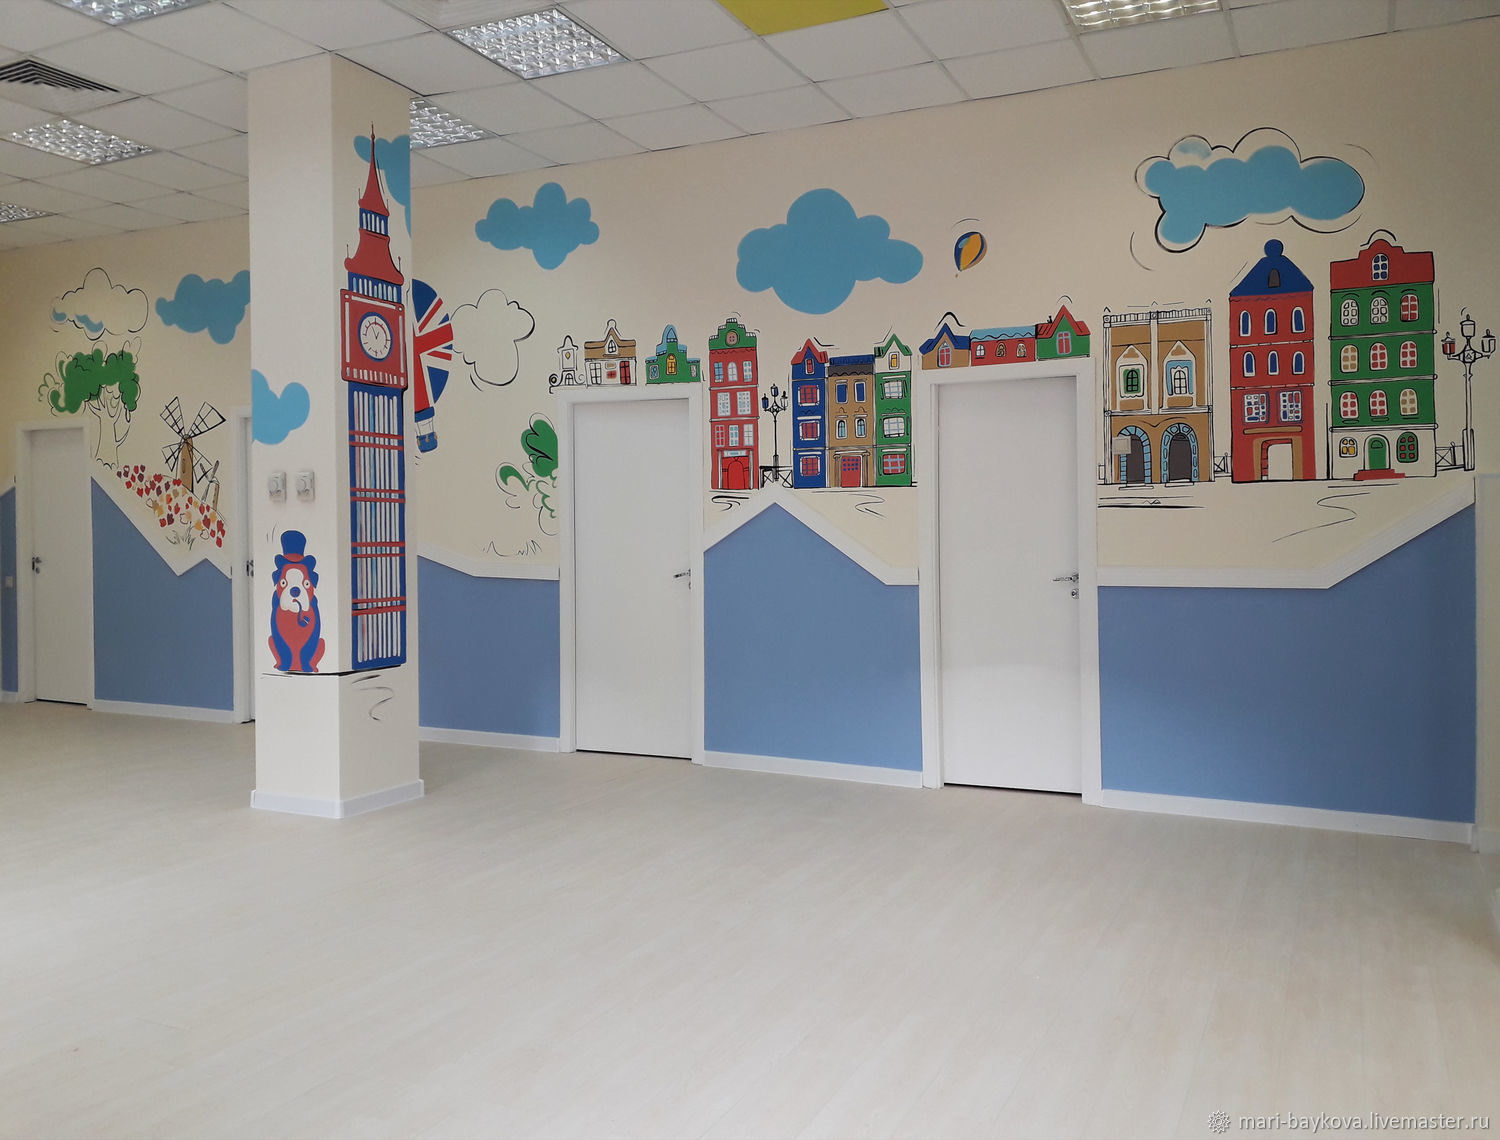 Дизайн и оформление стен детского сада | Проект по теме: | Образовательная социальная сеть